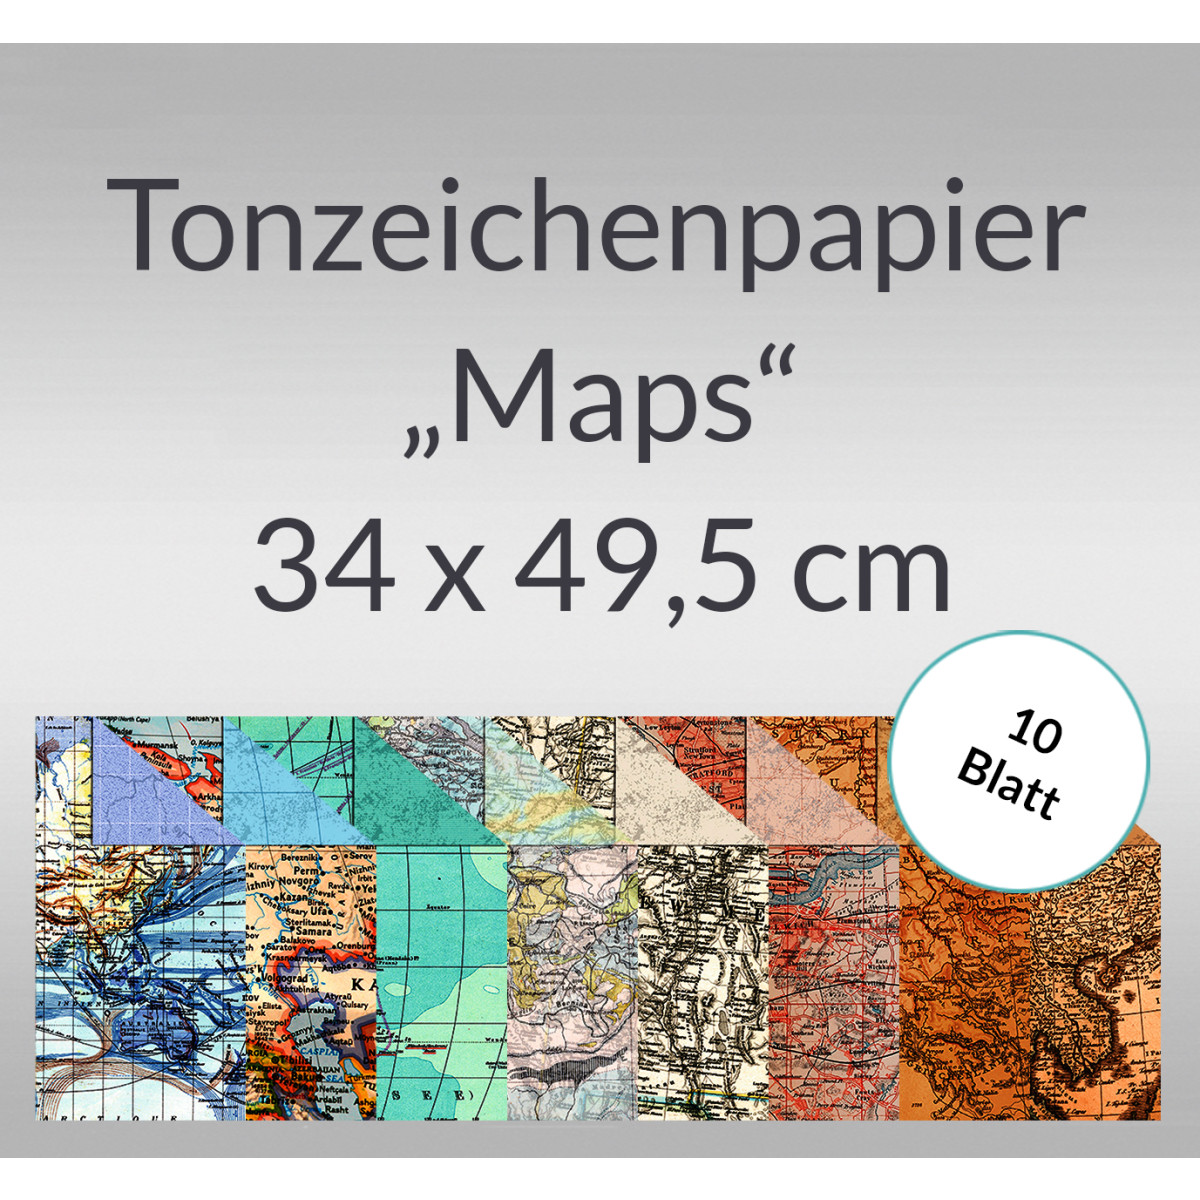 Tonzeichenpapier "Maps" 34 x 49,5 cm - 10 Blatt